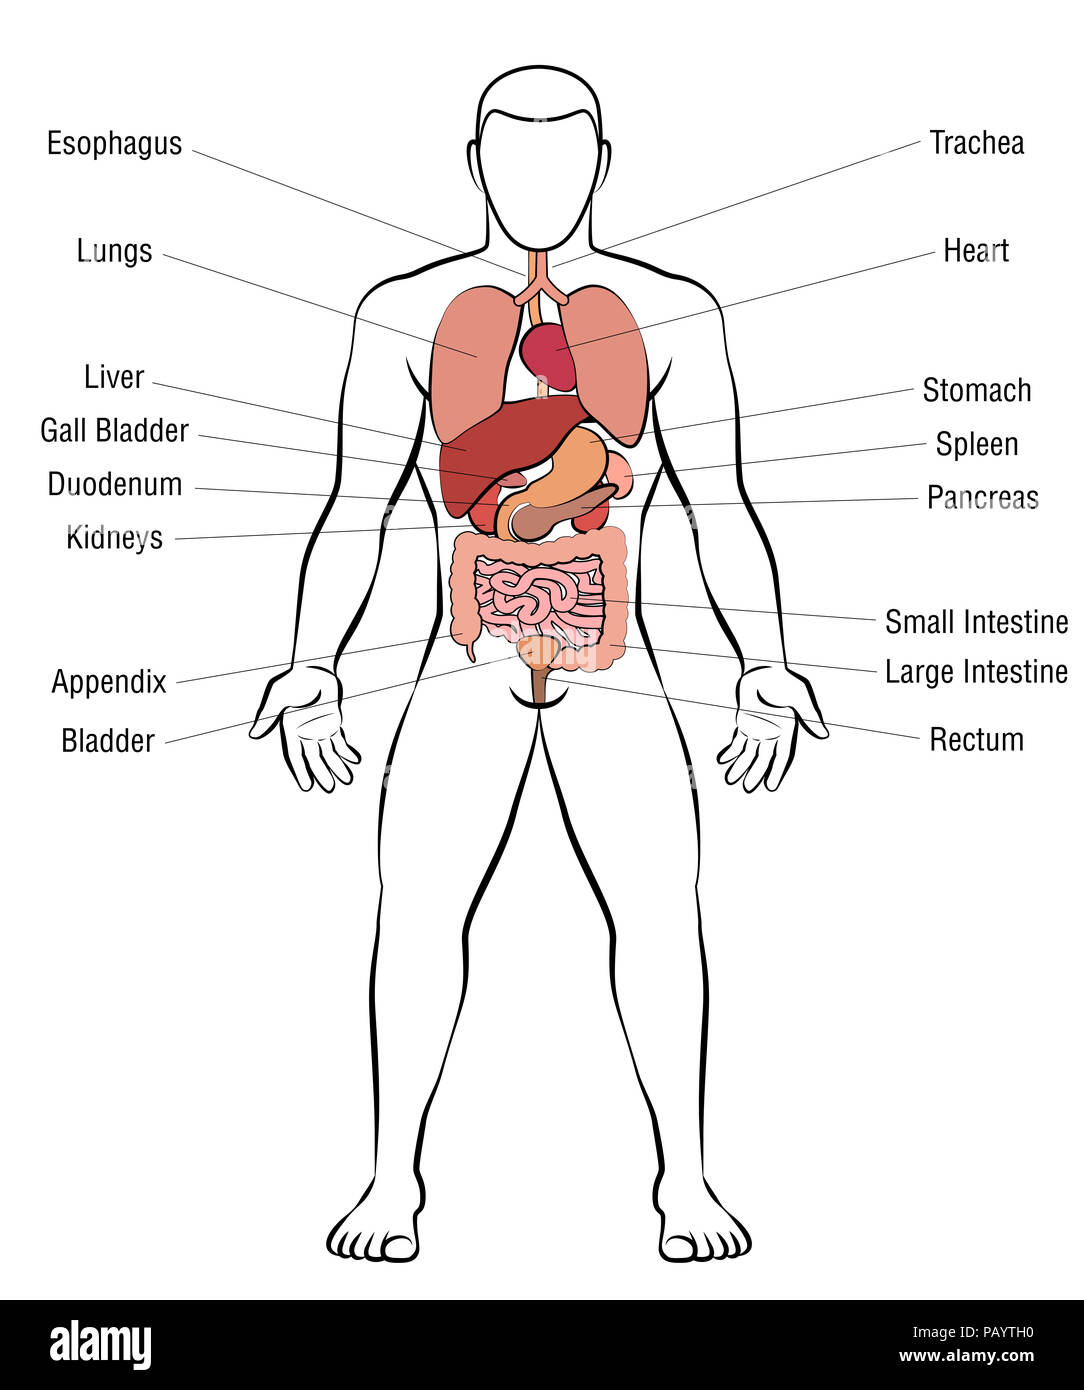 Les organes internes, corps de l'homme - schéma de l'anatomie humaine - illustration sur fond blanc. Banque D'Images